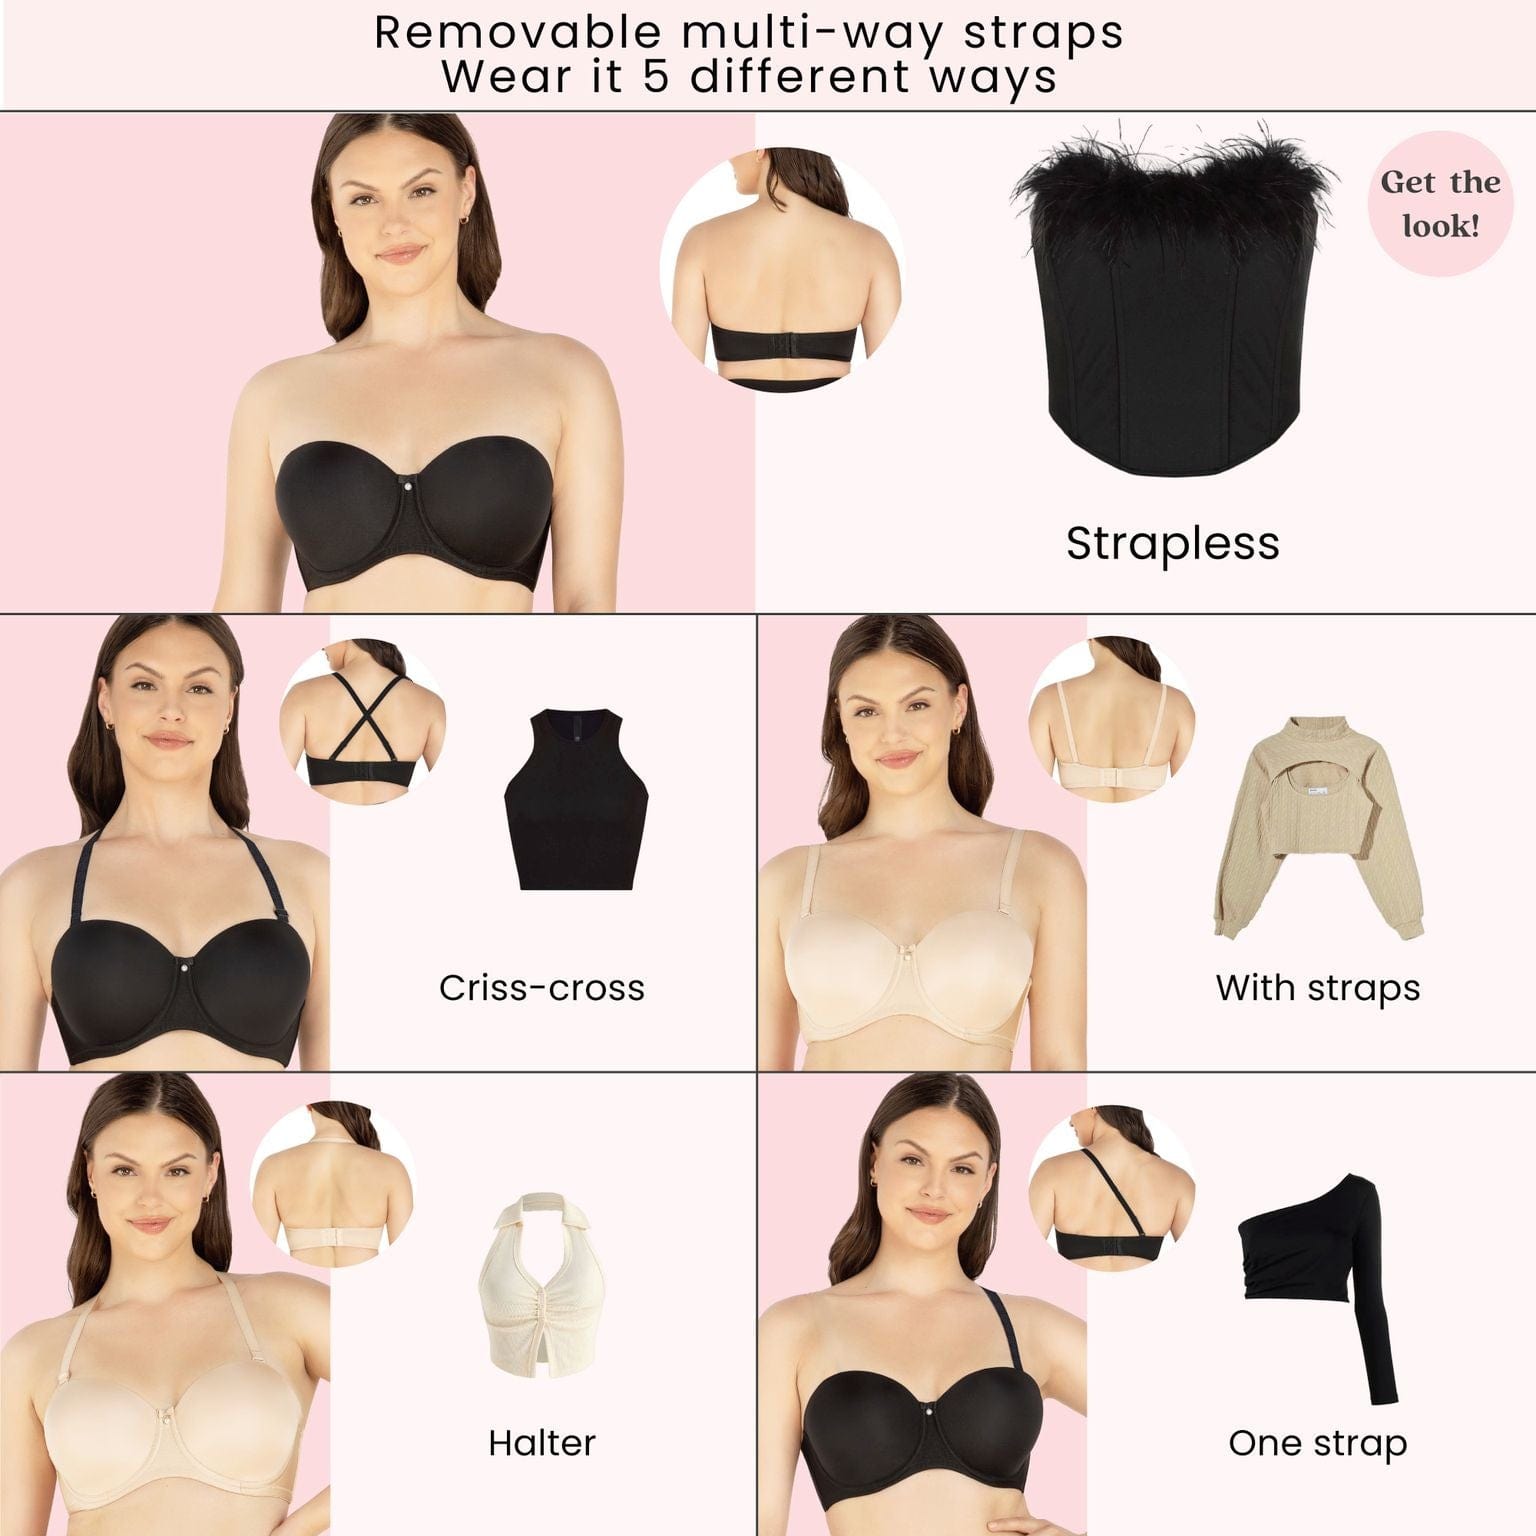 strapless bra for big boobs - ParfaitLingerie.com - Blog